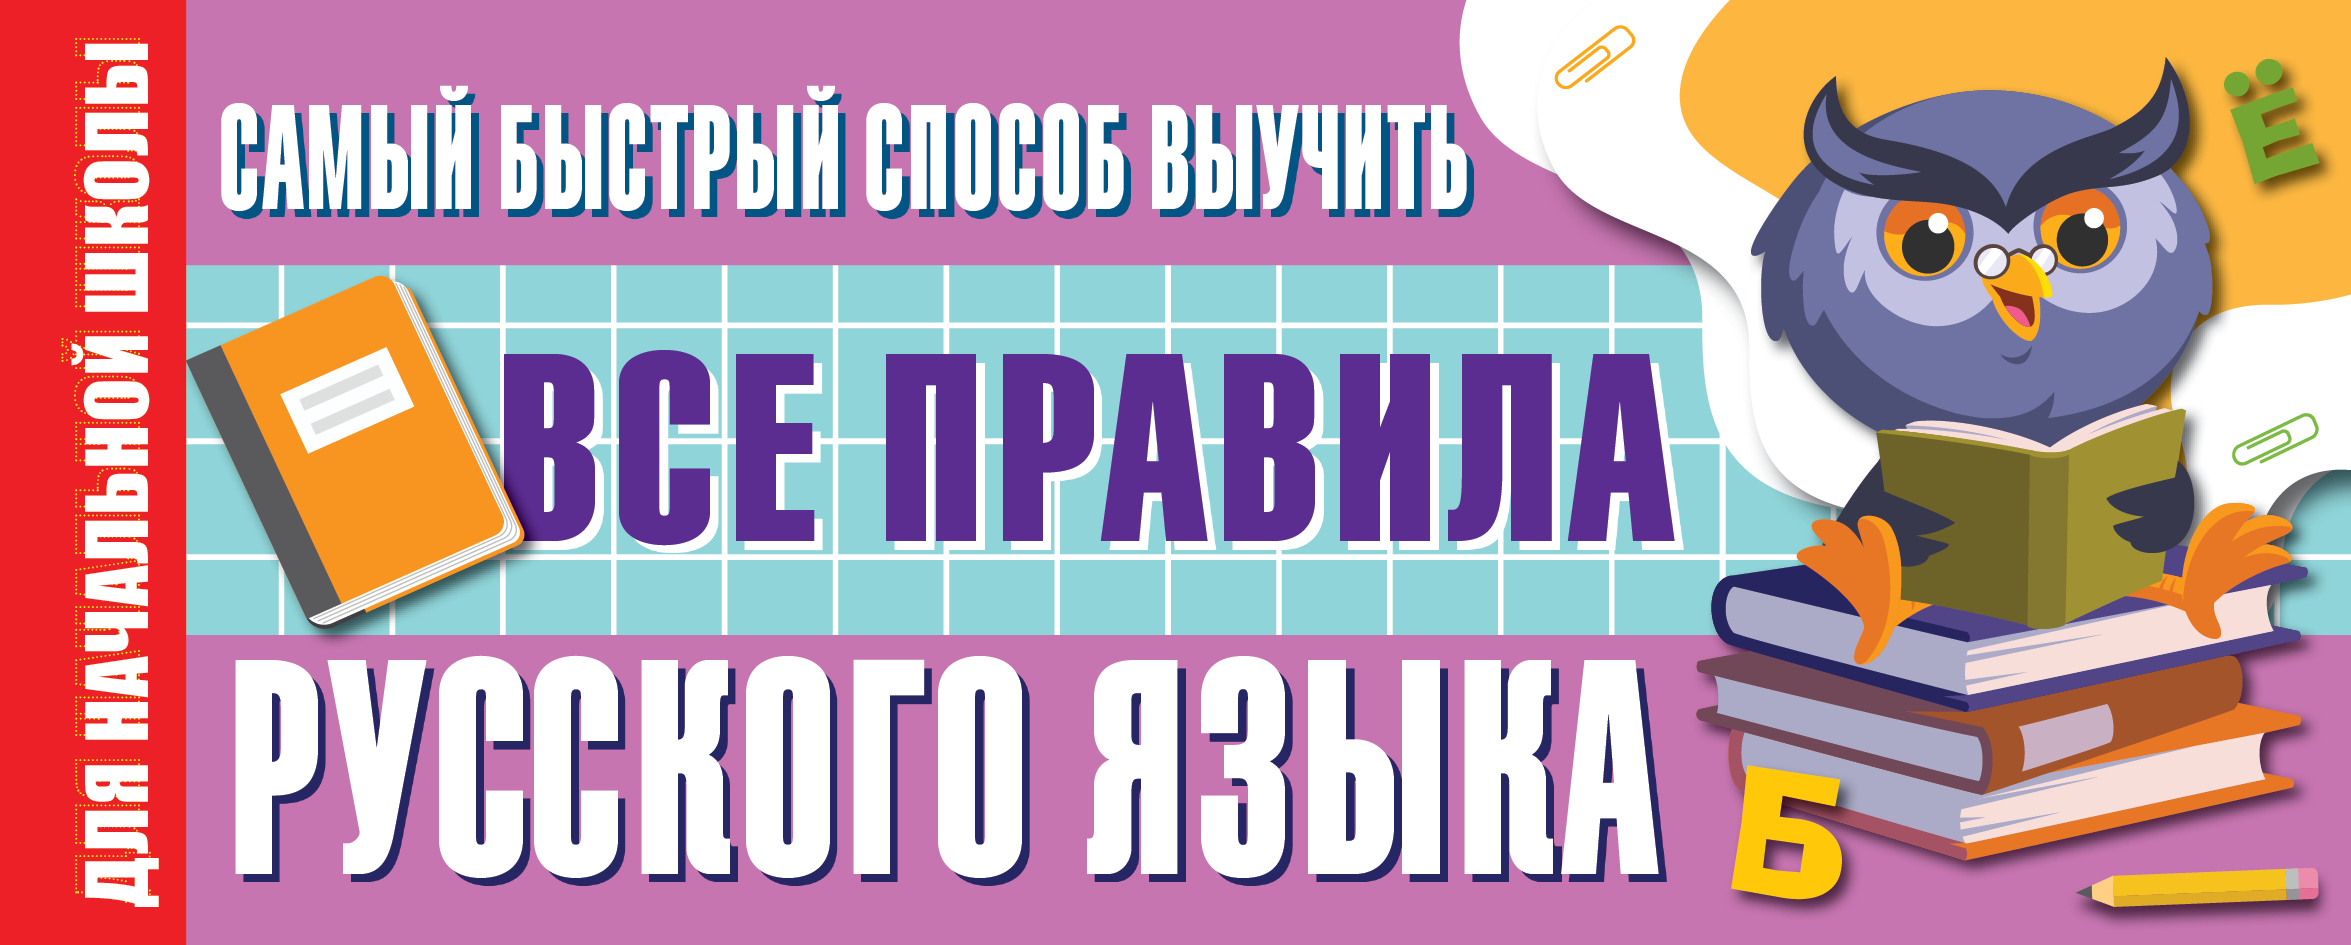 Самый быстрый способ выучить все правила русского языка клепова е все правила русского языка для школьников быстрый способ запомнить